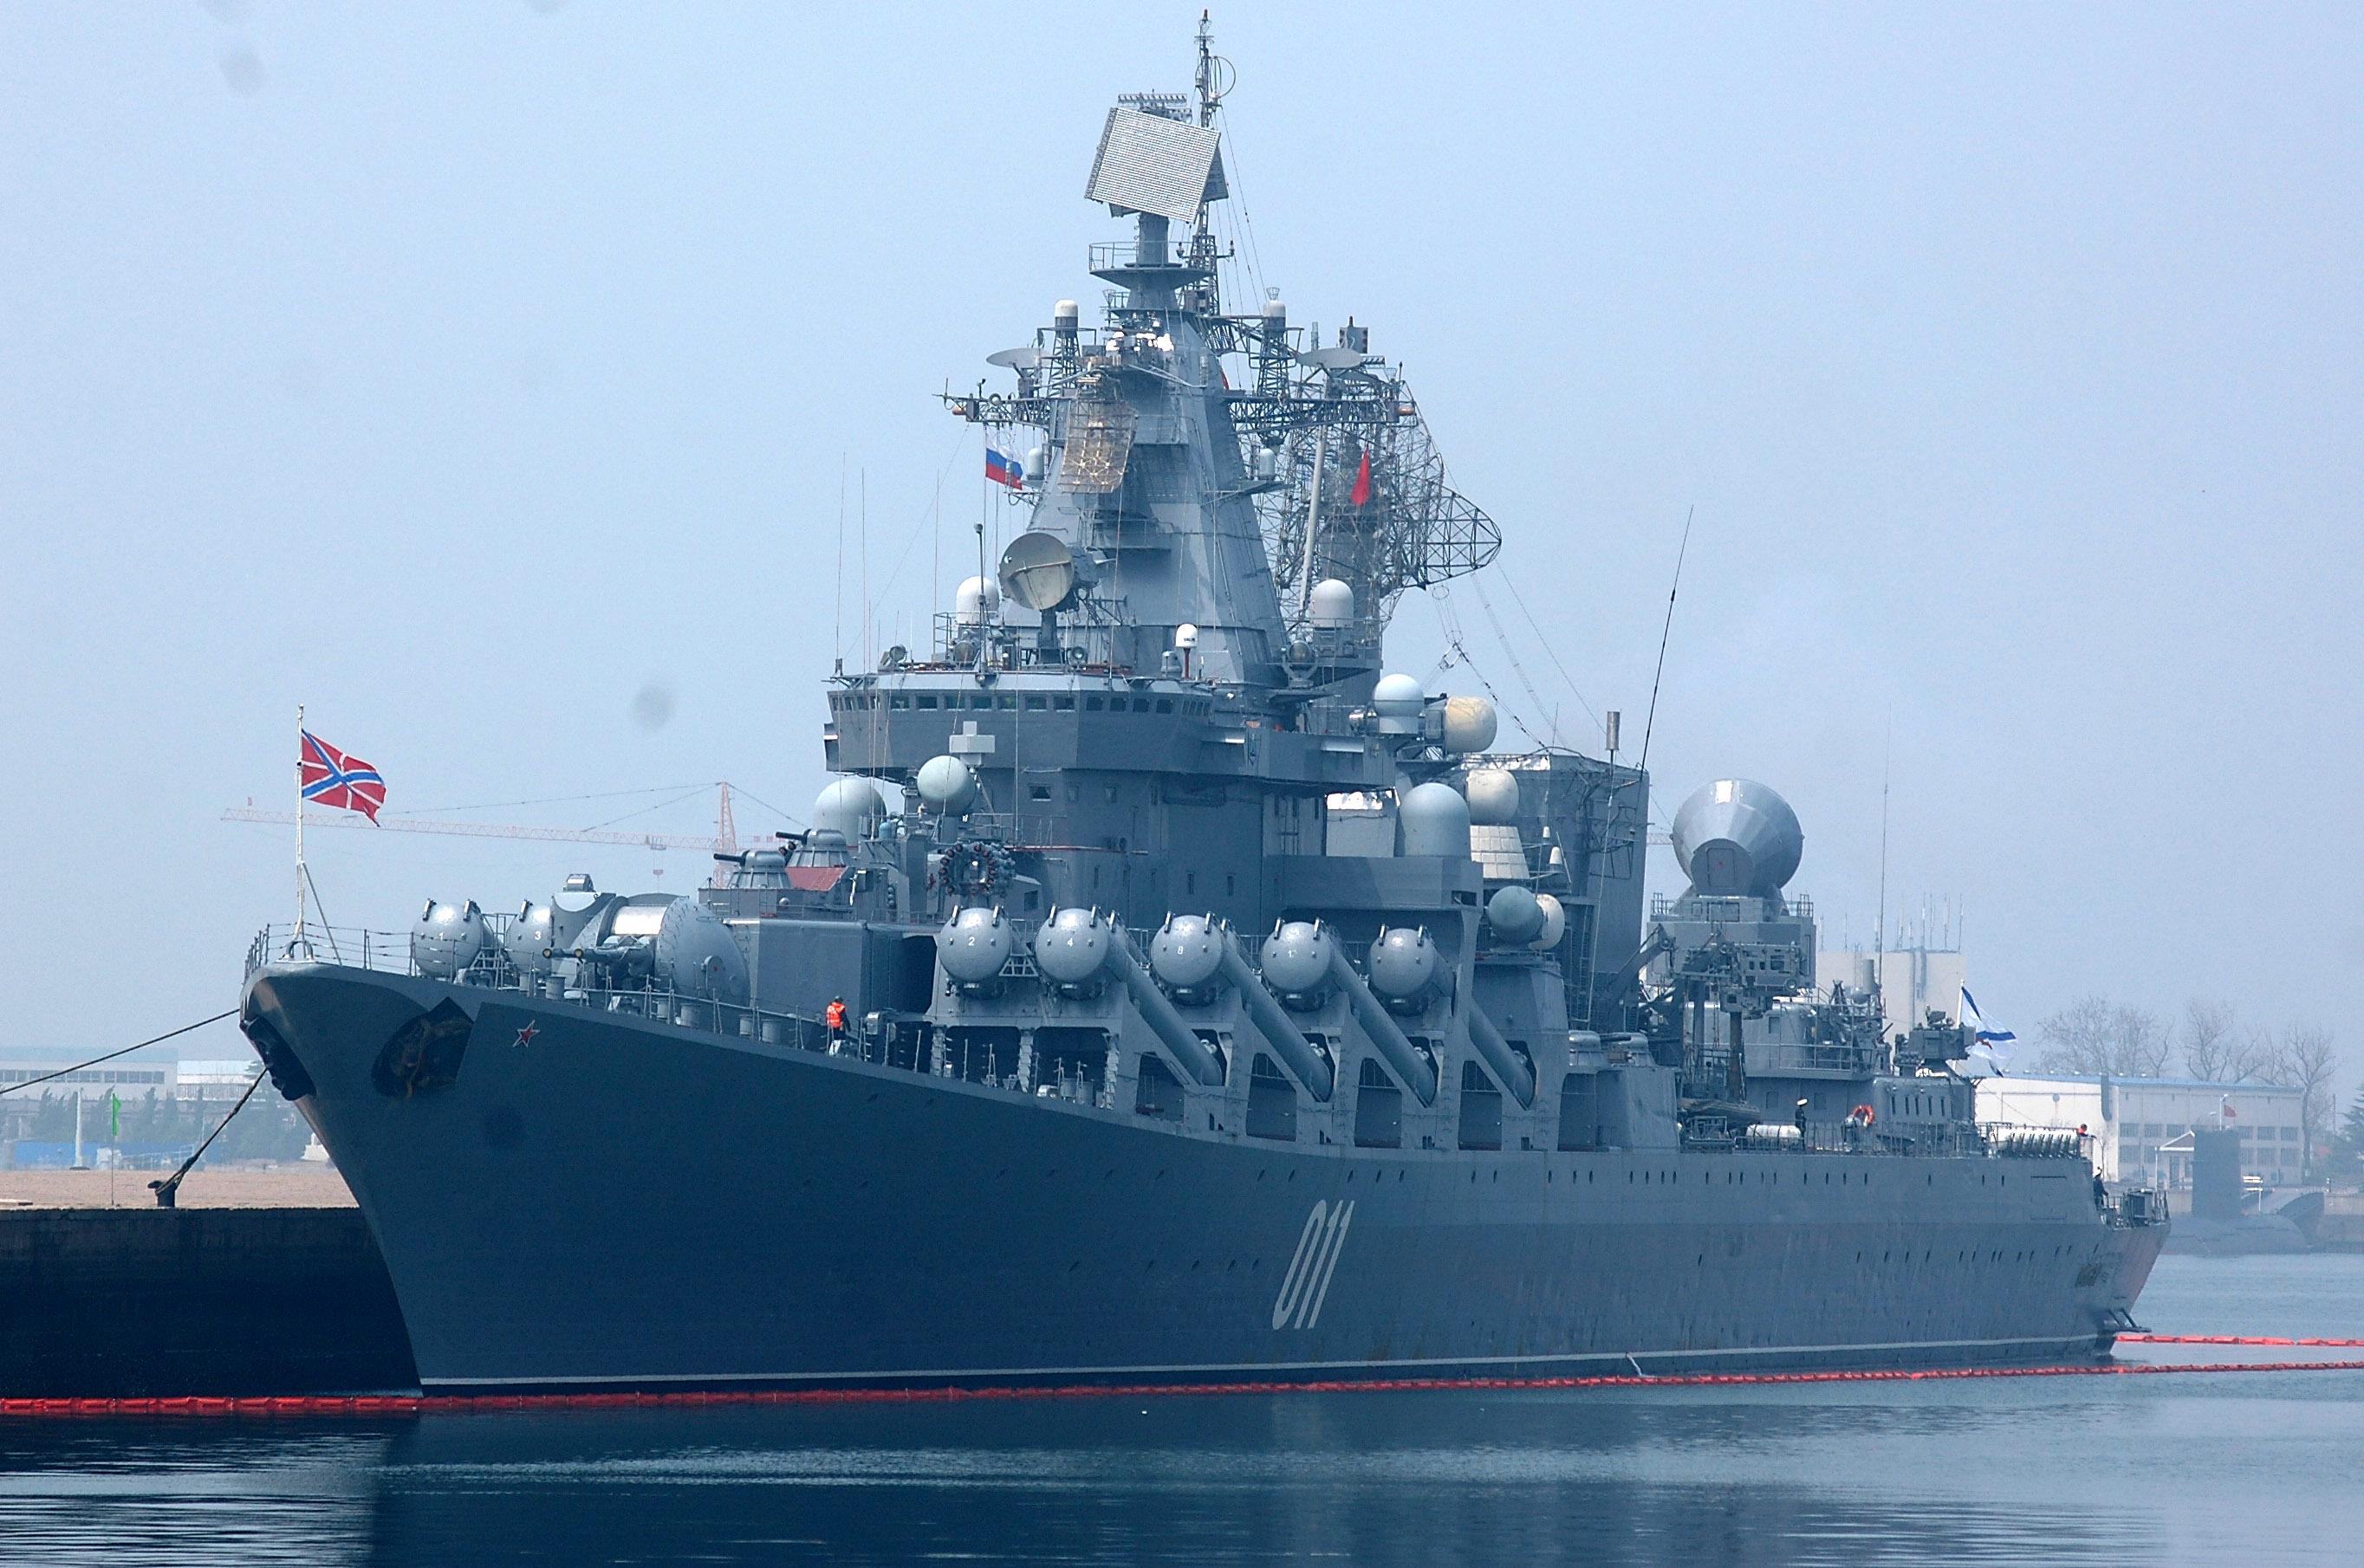 俄罗斯海军瓦良格号巡洋舰,瓦良格真是个很有意义的名字